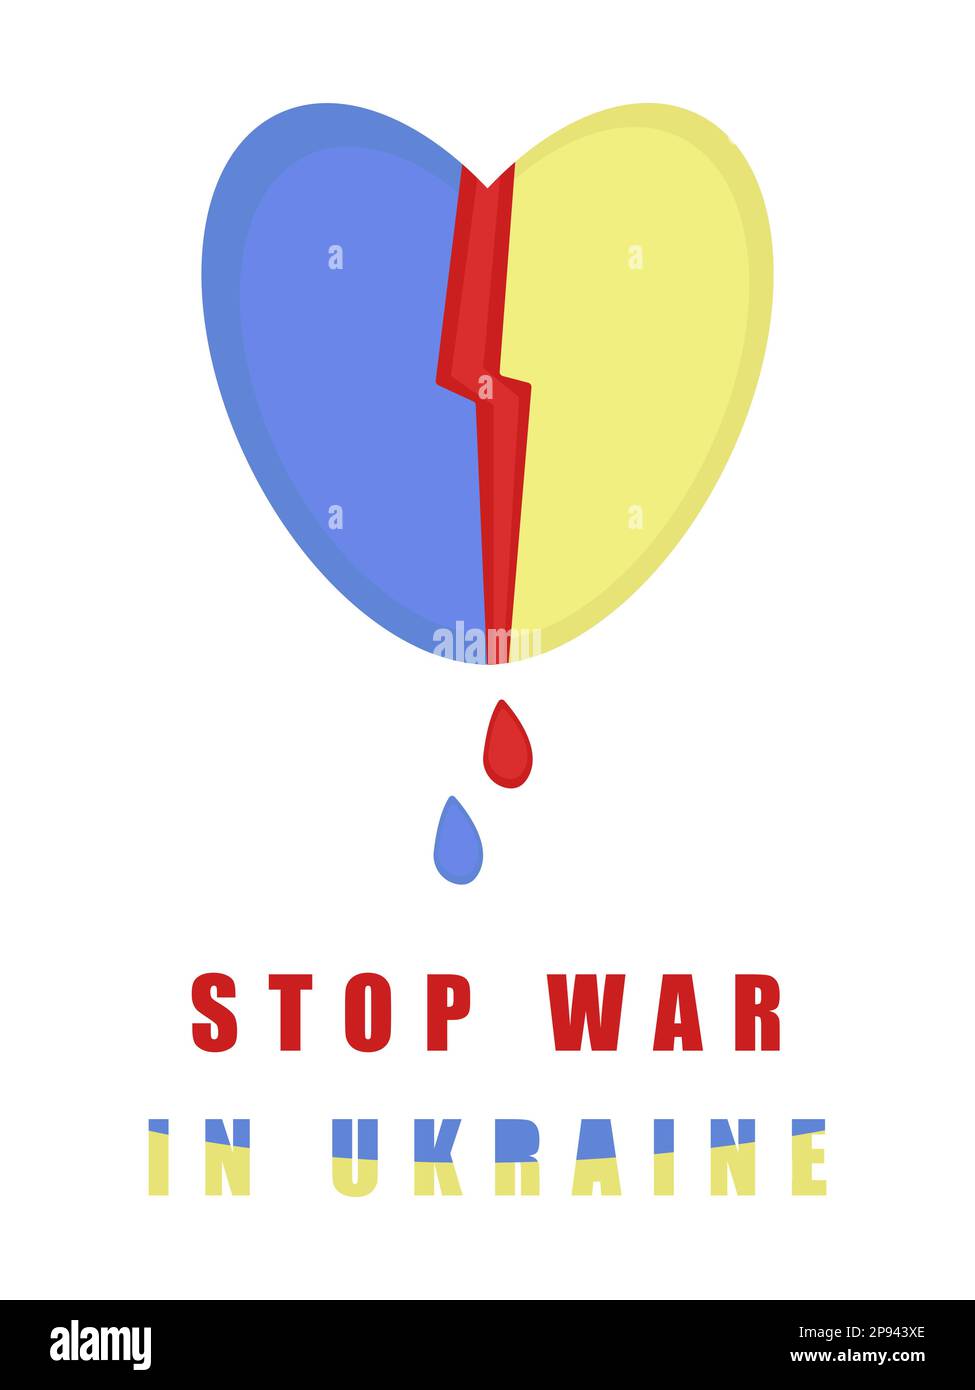 Ukrainisches Herz und Worte, farbenfrohe Illustration Stock Vektor